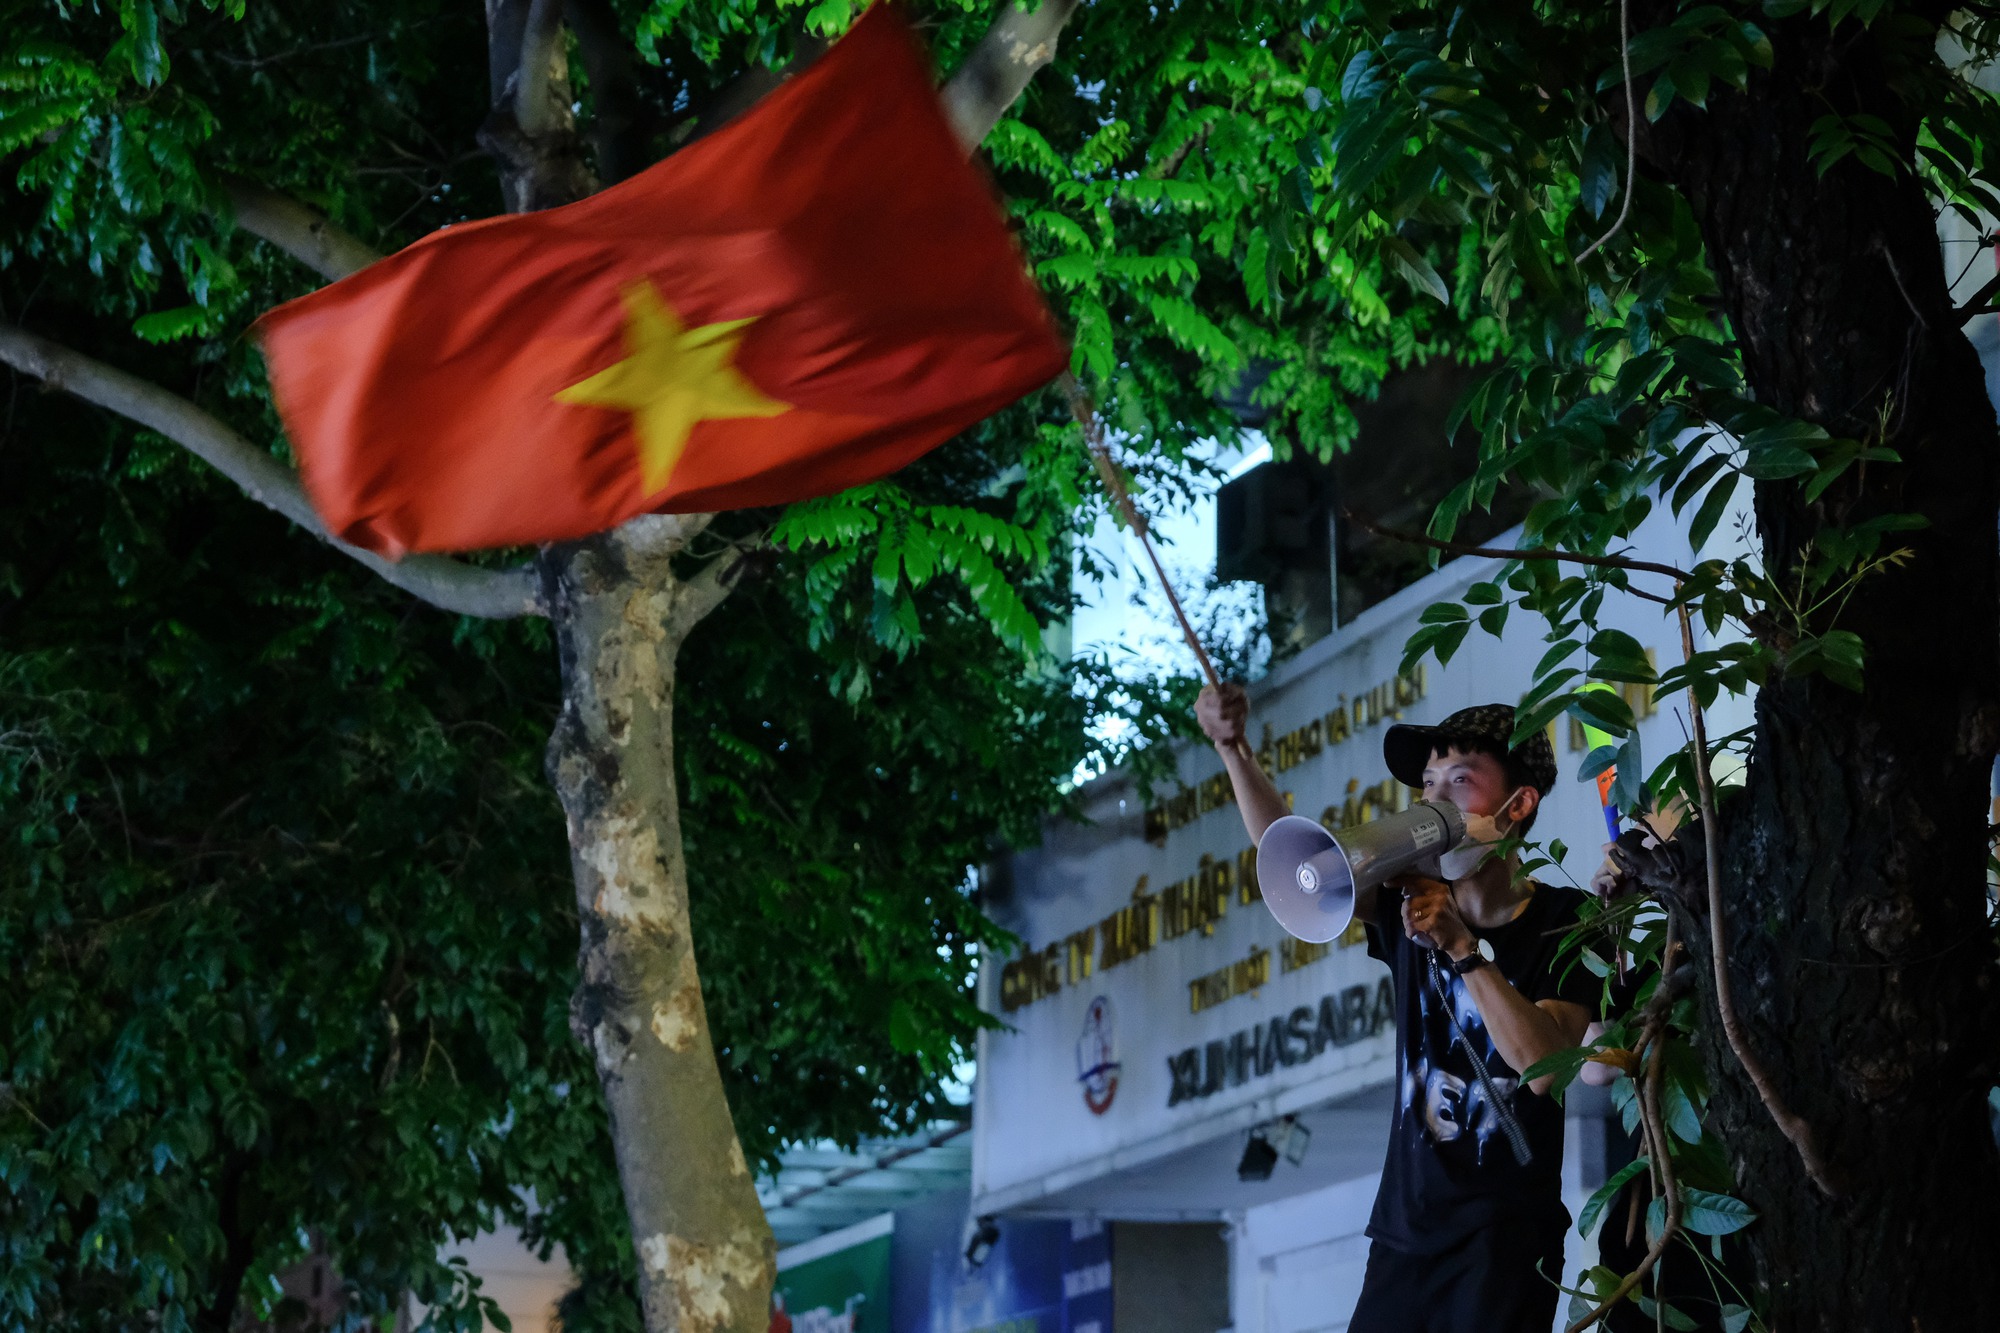 Đêm U23 Việt Nam giành HCV SEA Games trả món nợ với người Thái, người dân cả nước xuống đường nhuộm đỏ mọi tuyến phố - Ảnh 12.